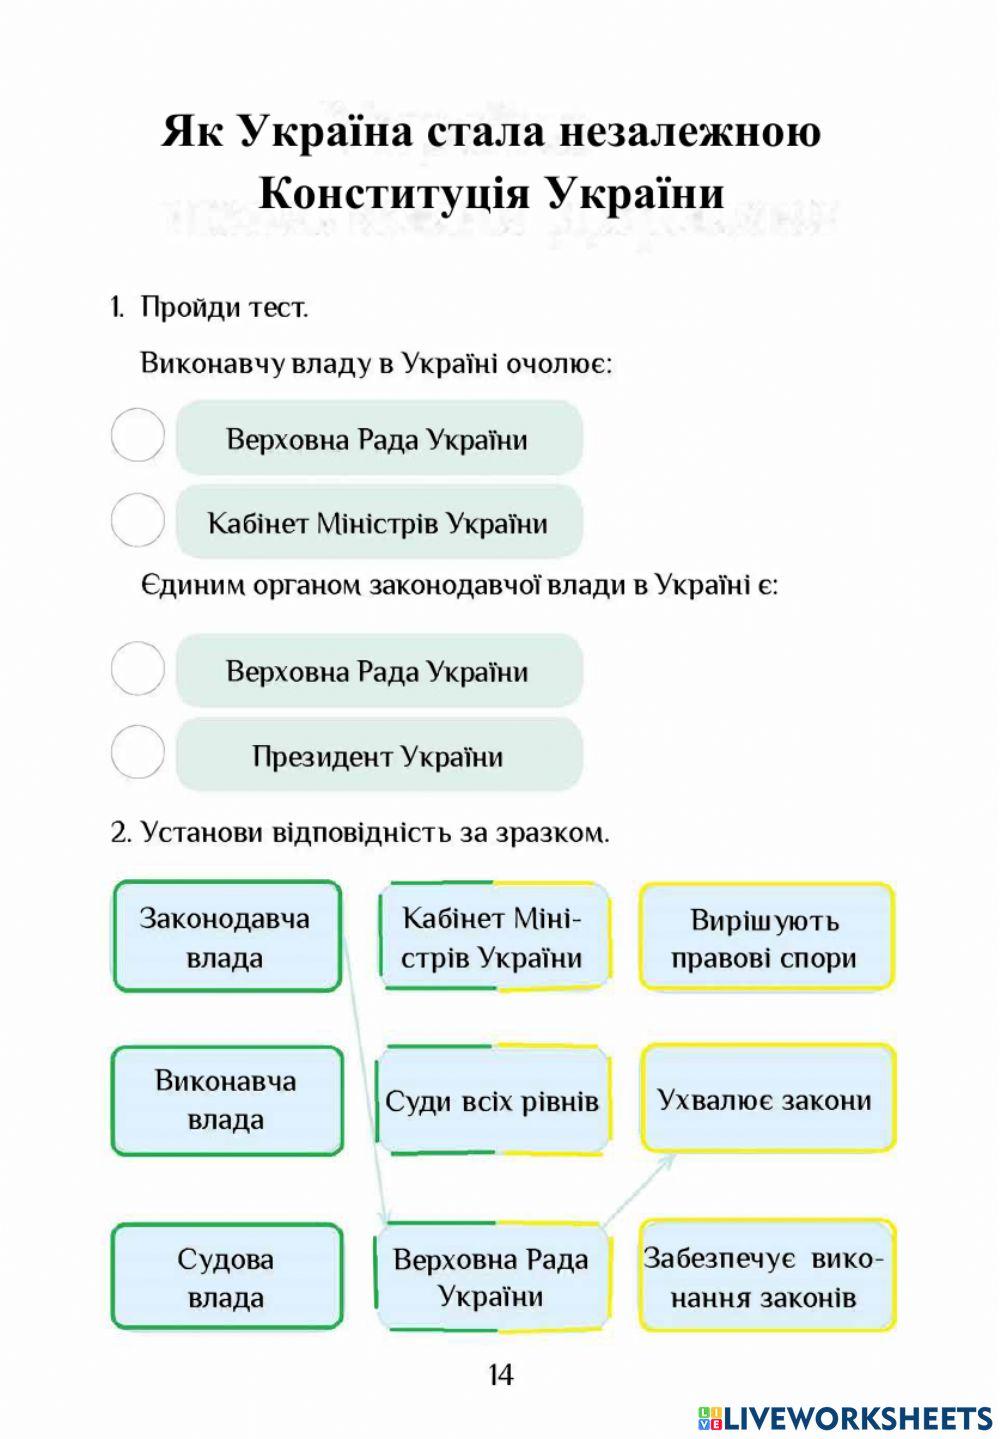 ЯДС РЗ с. 14-15 Конституція України